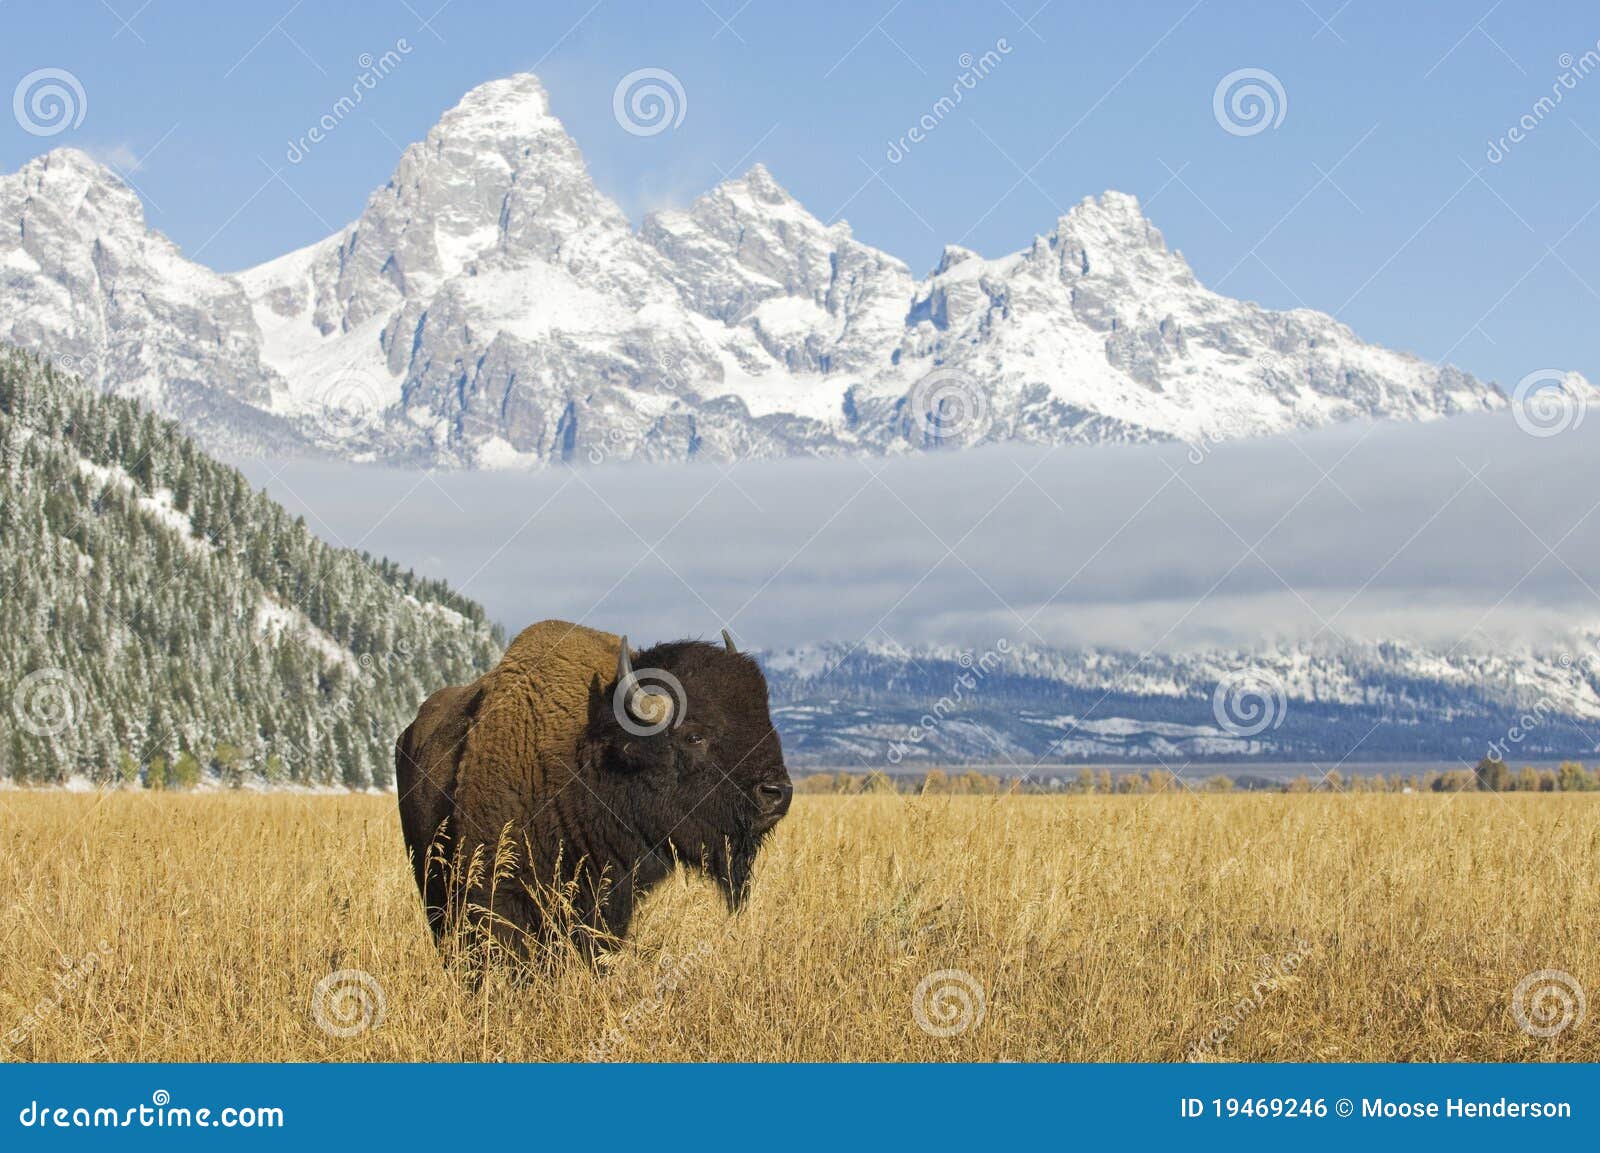 bison at grand teton